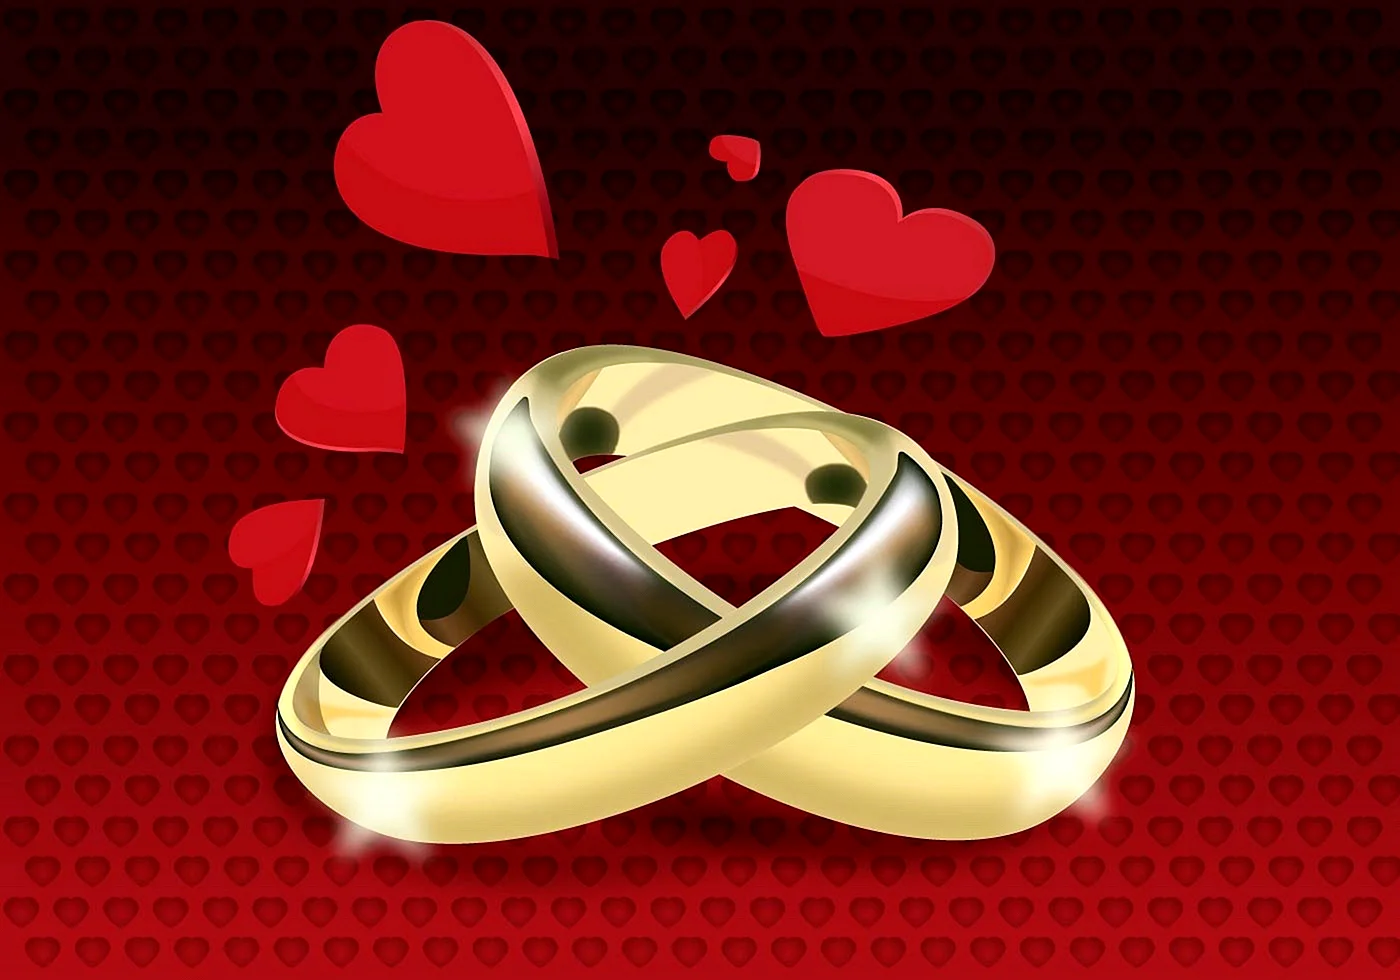 Обручальное кольцо с сердцем